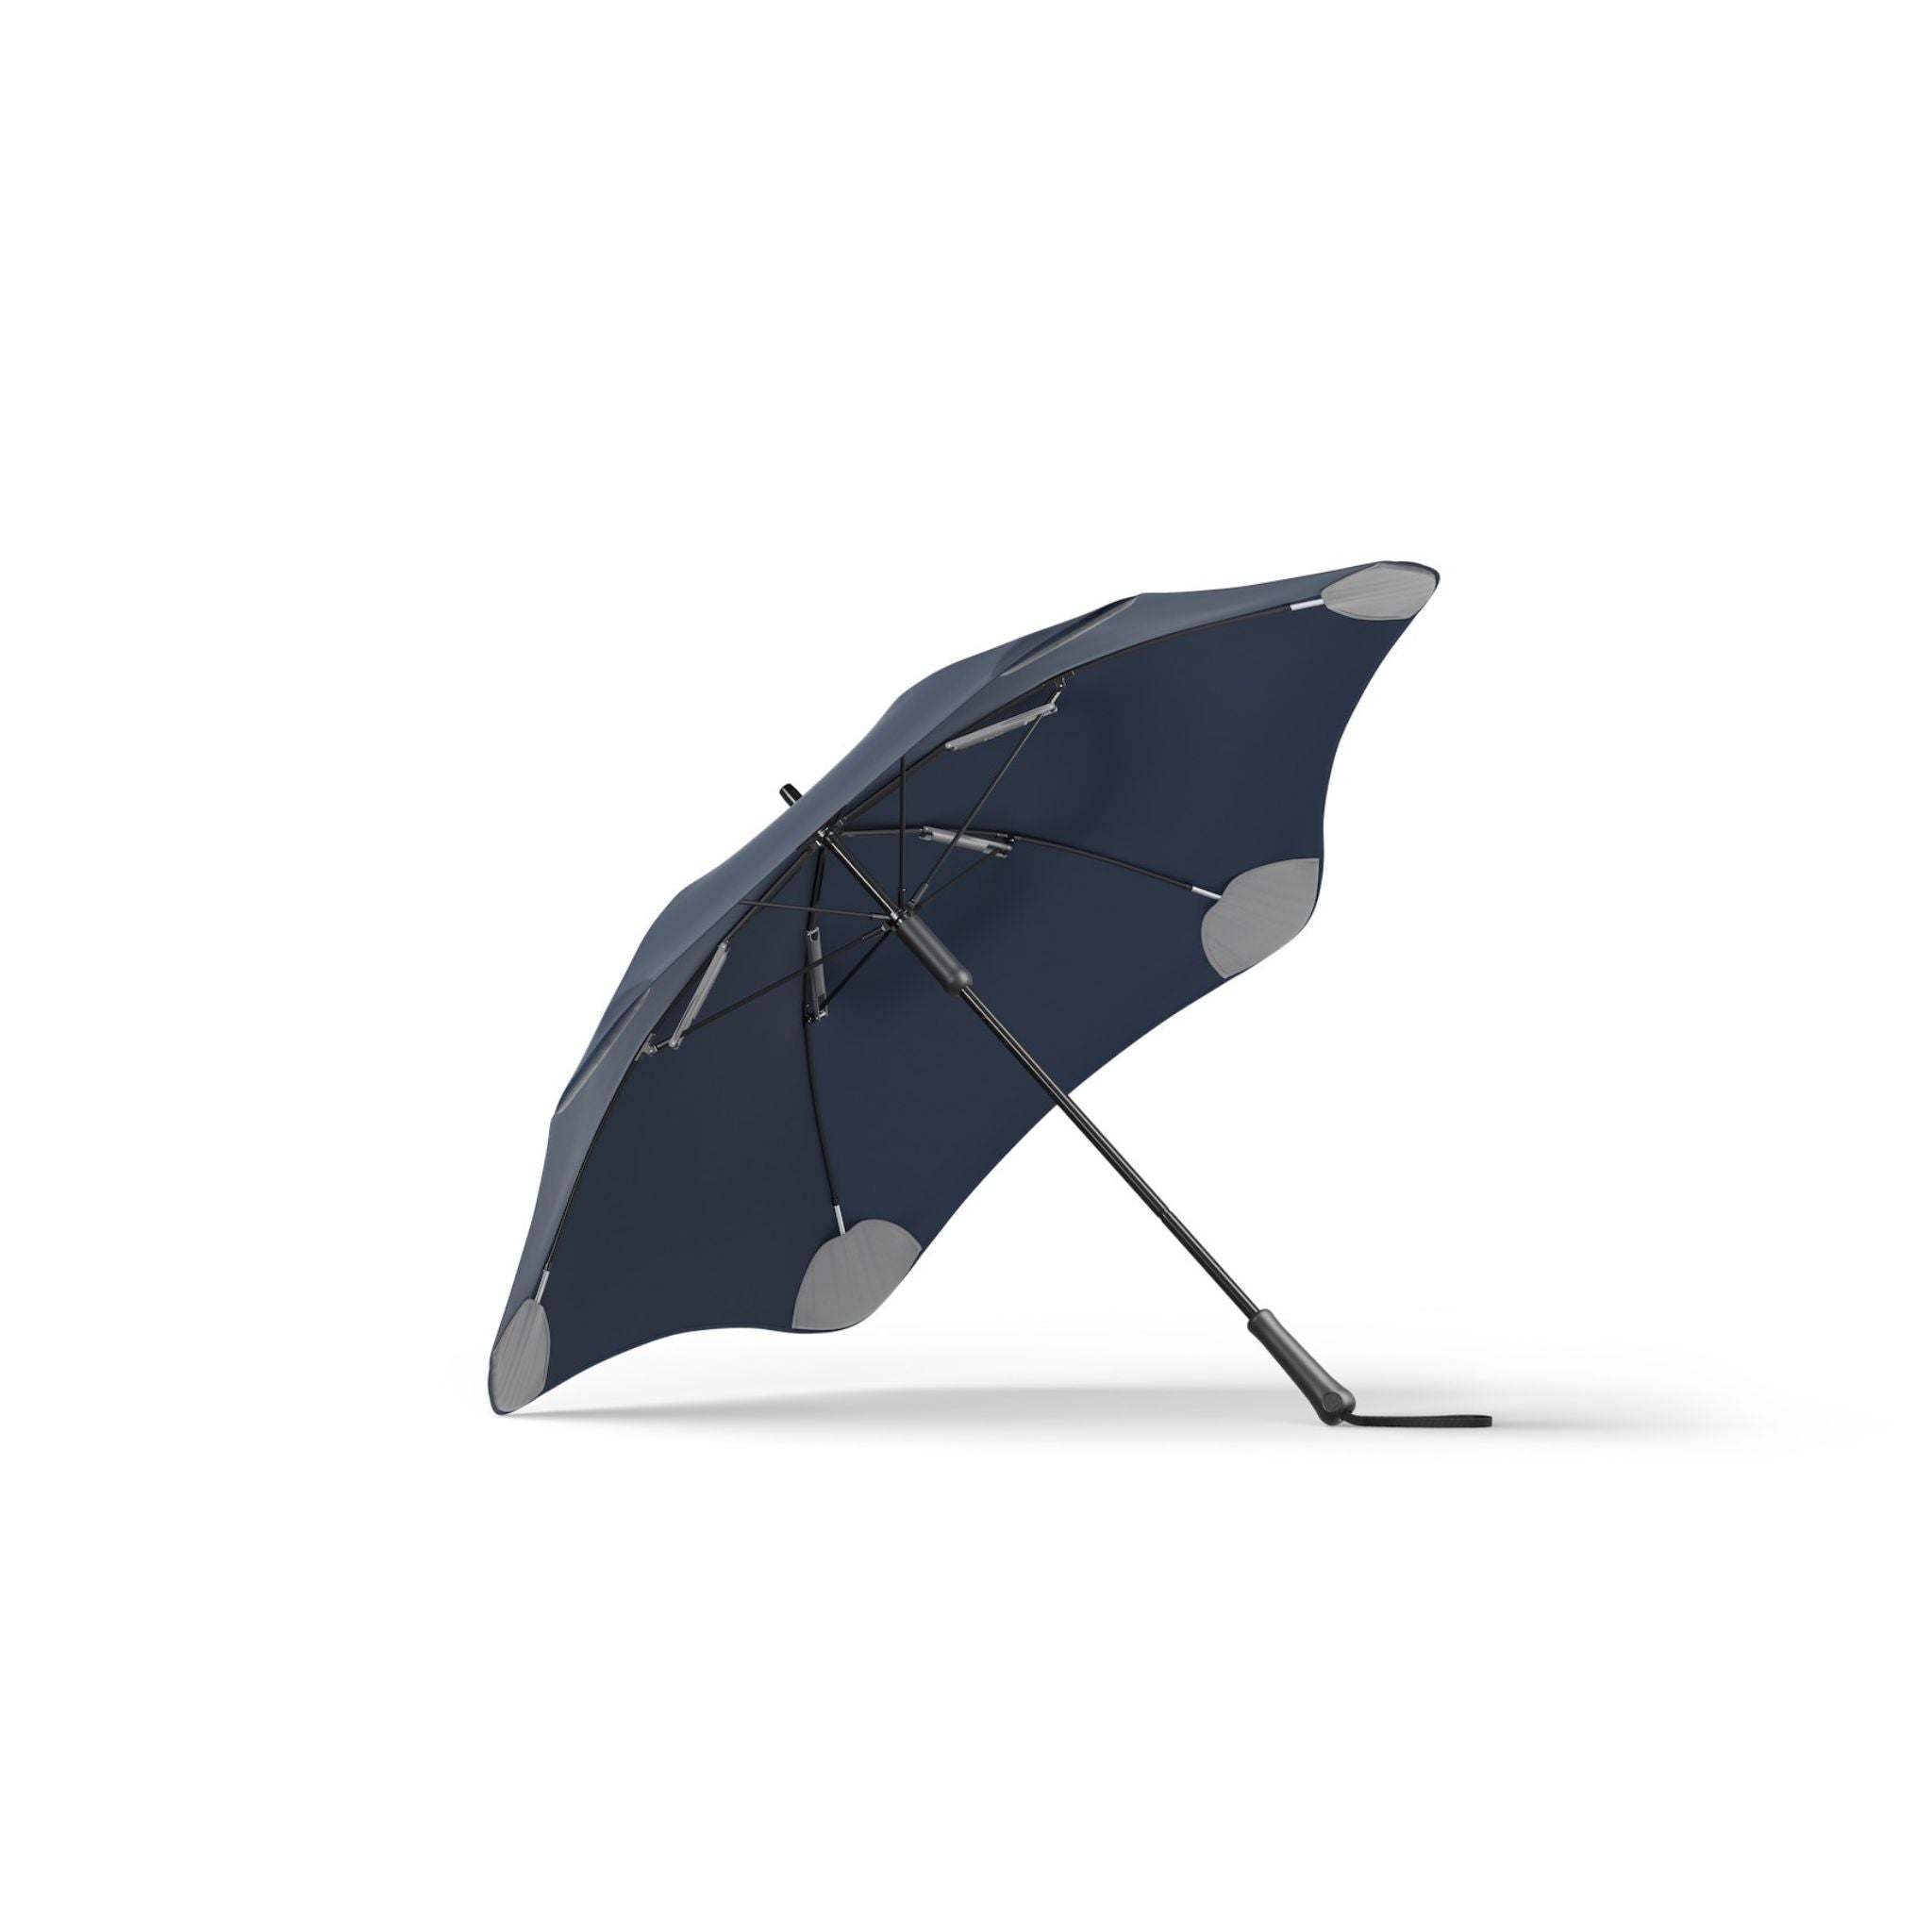 The Classic Umbrella